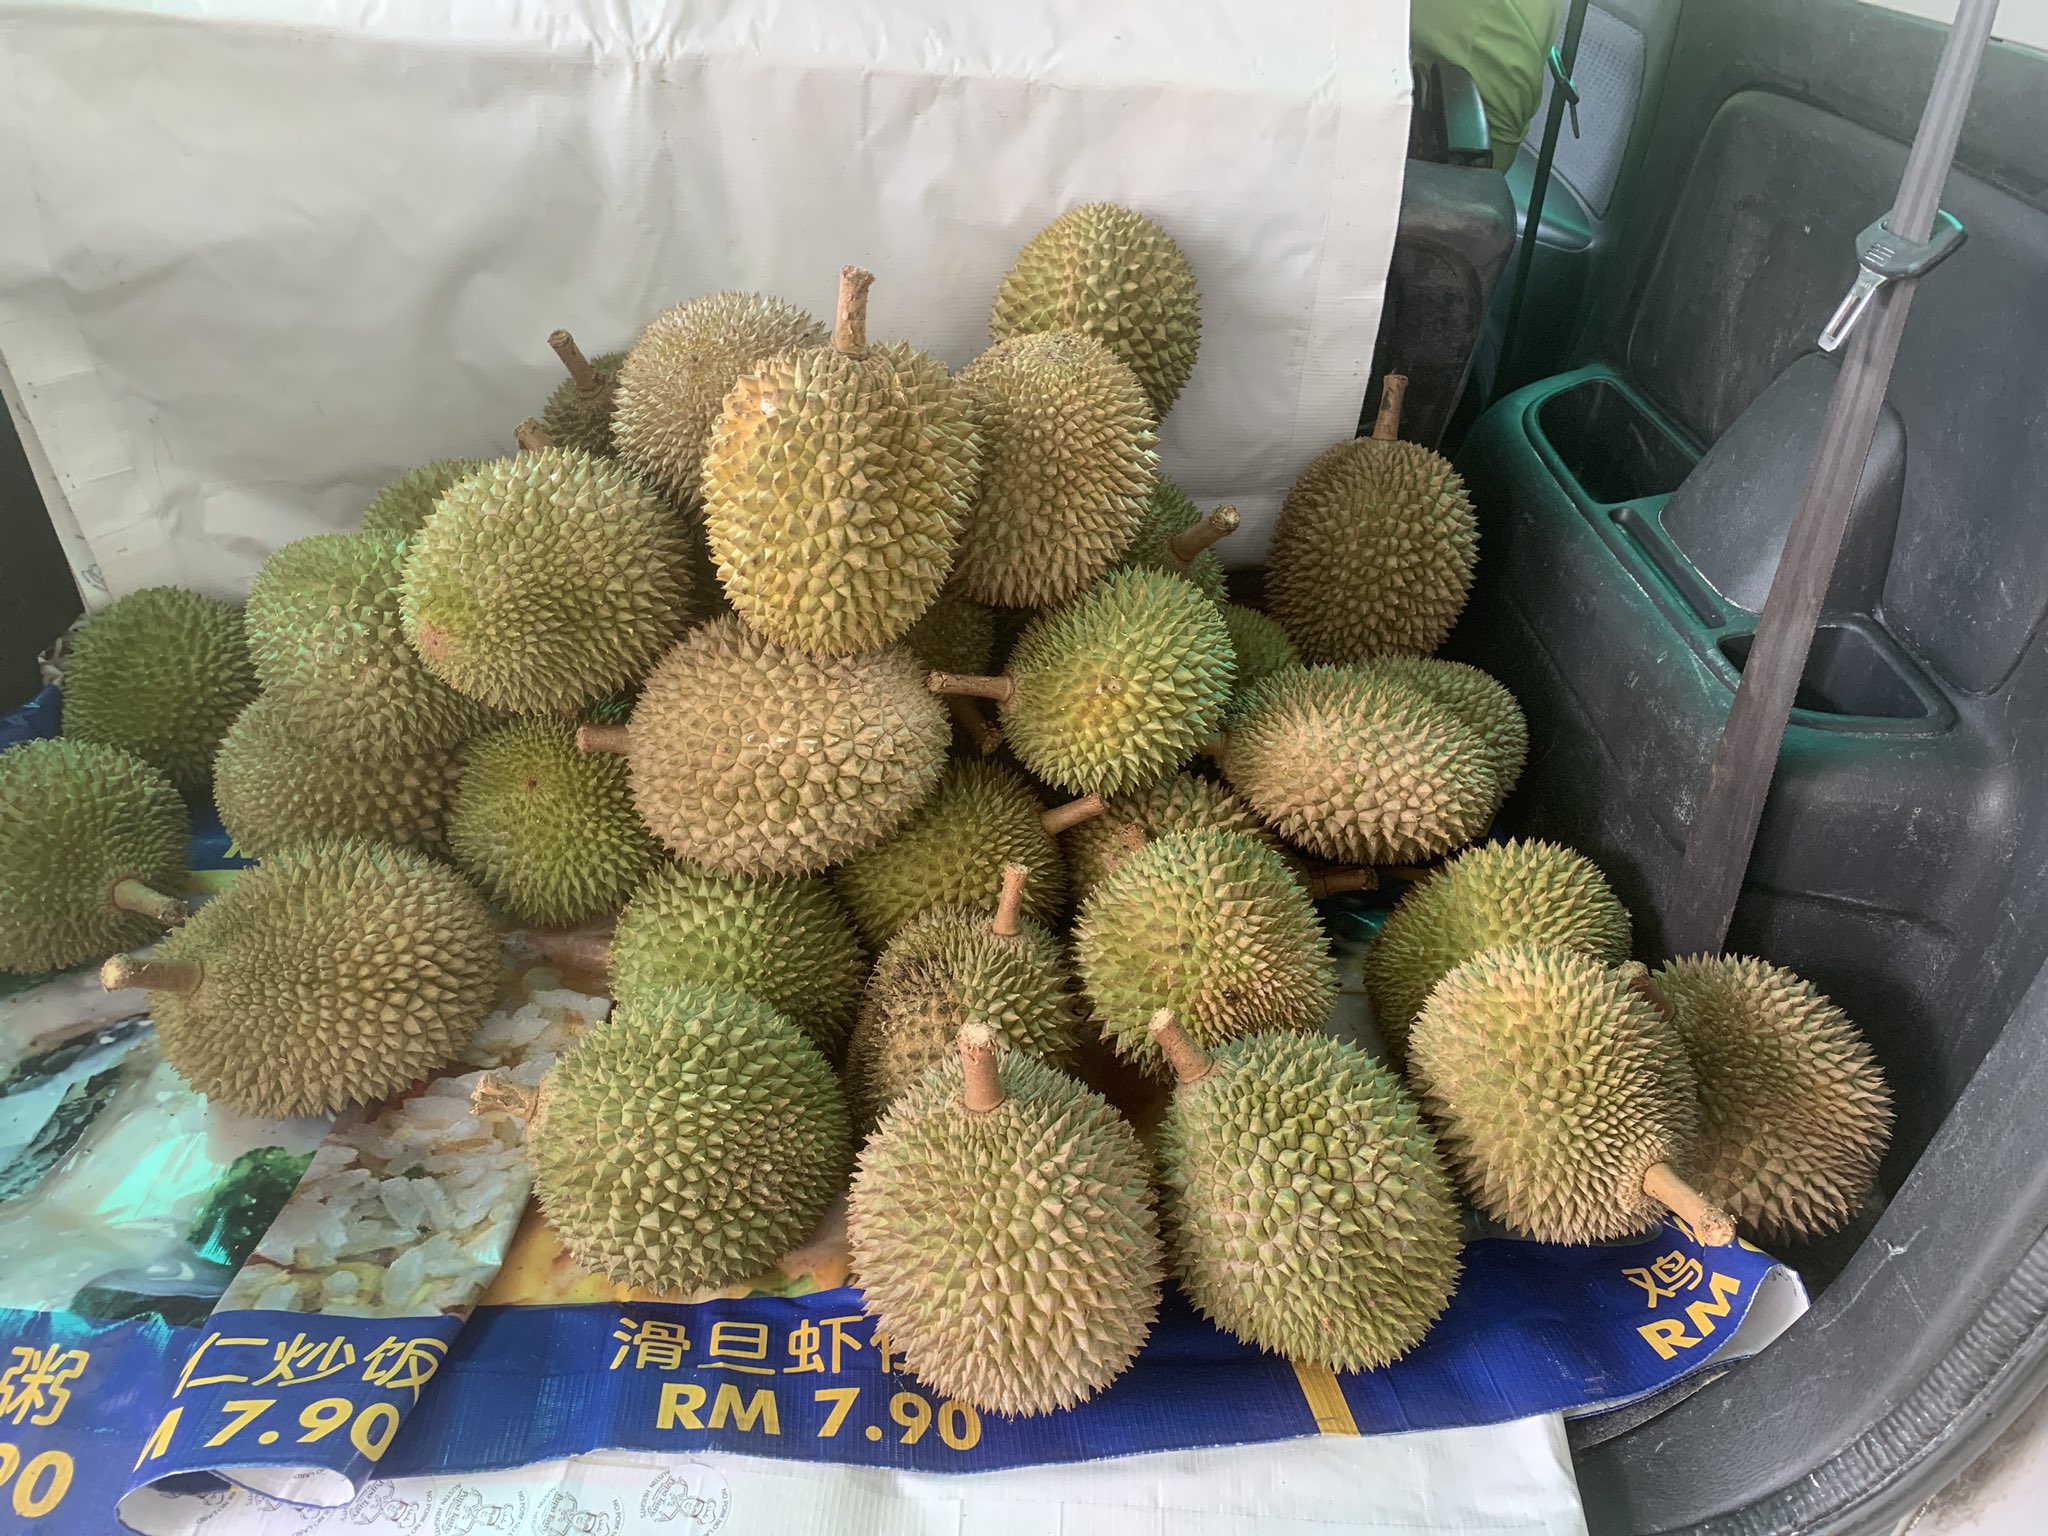 Durian udang merah johor